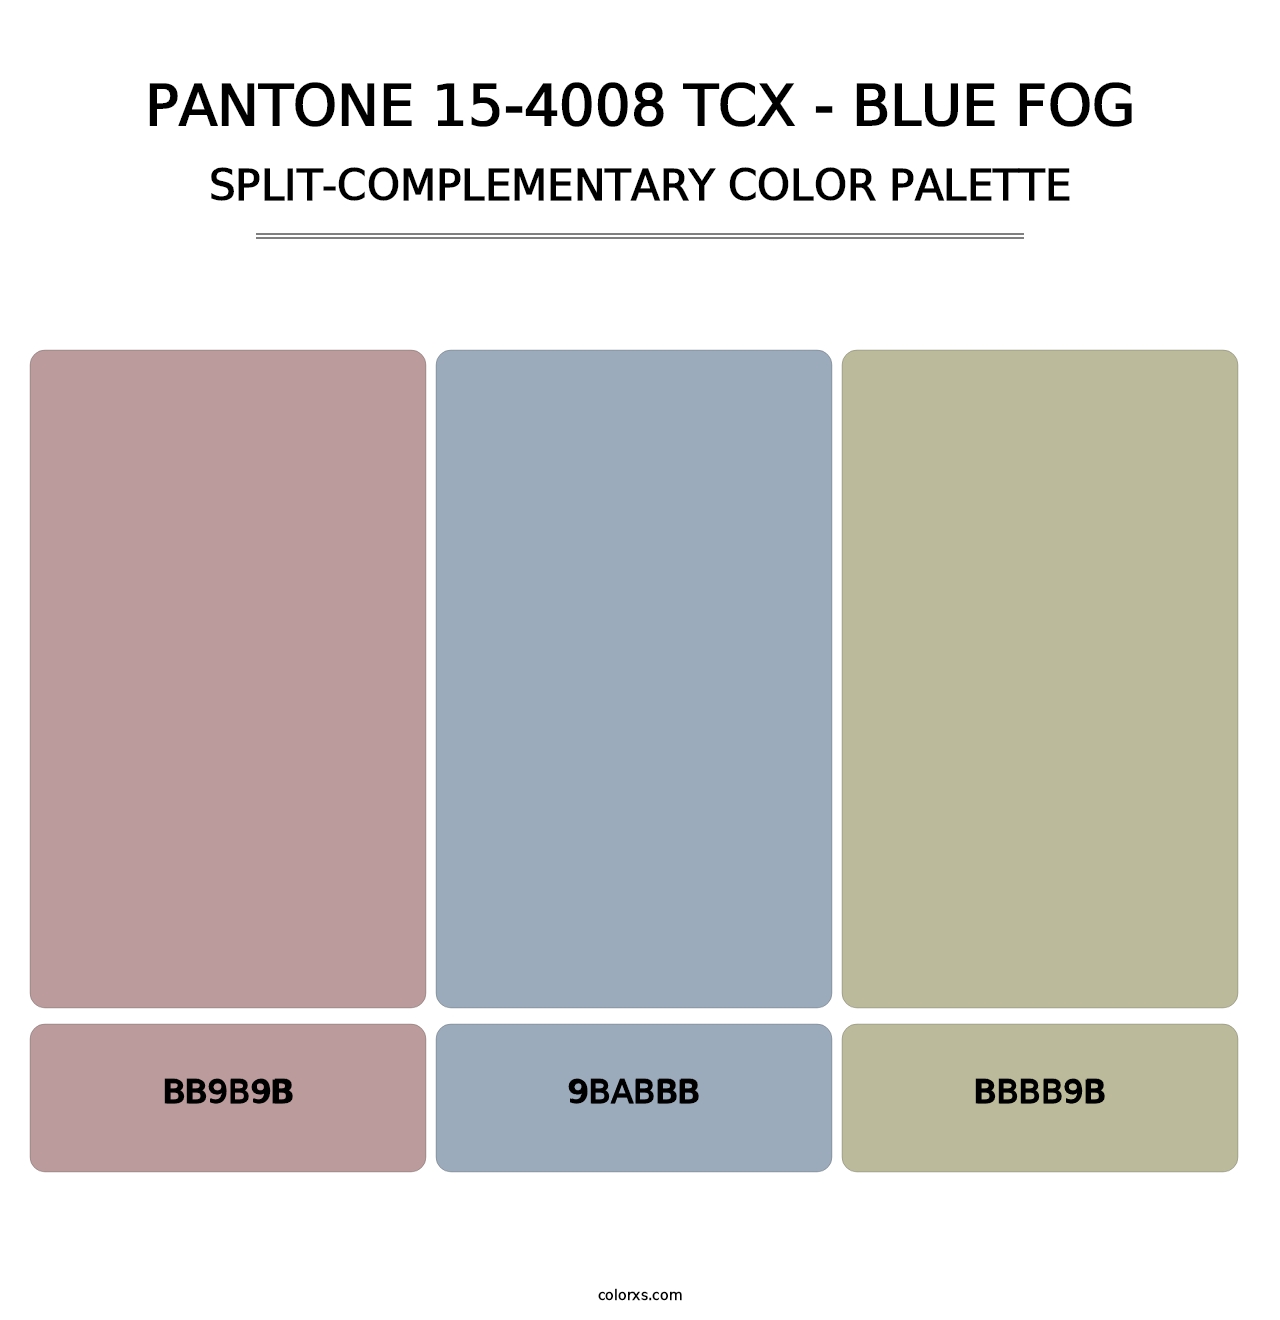 PANTONE 15-4008 TCX - Blue Fog - Split-Complementary Color Palette